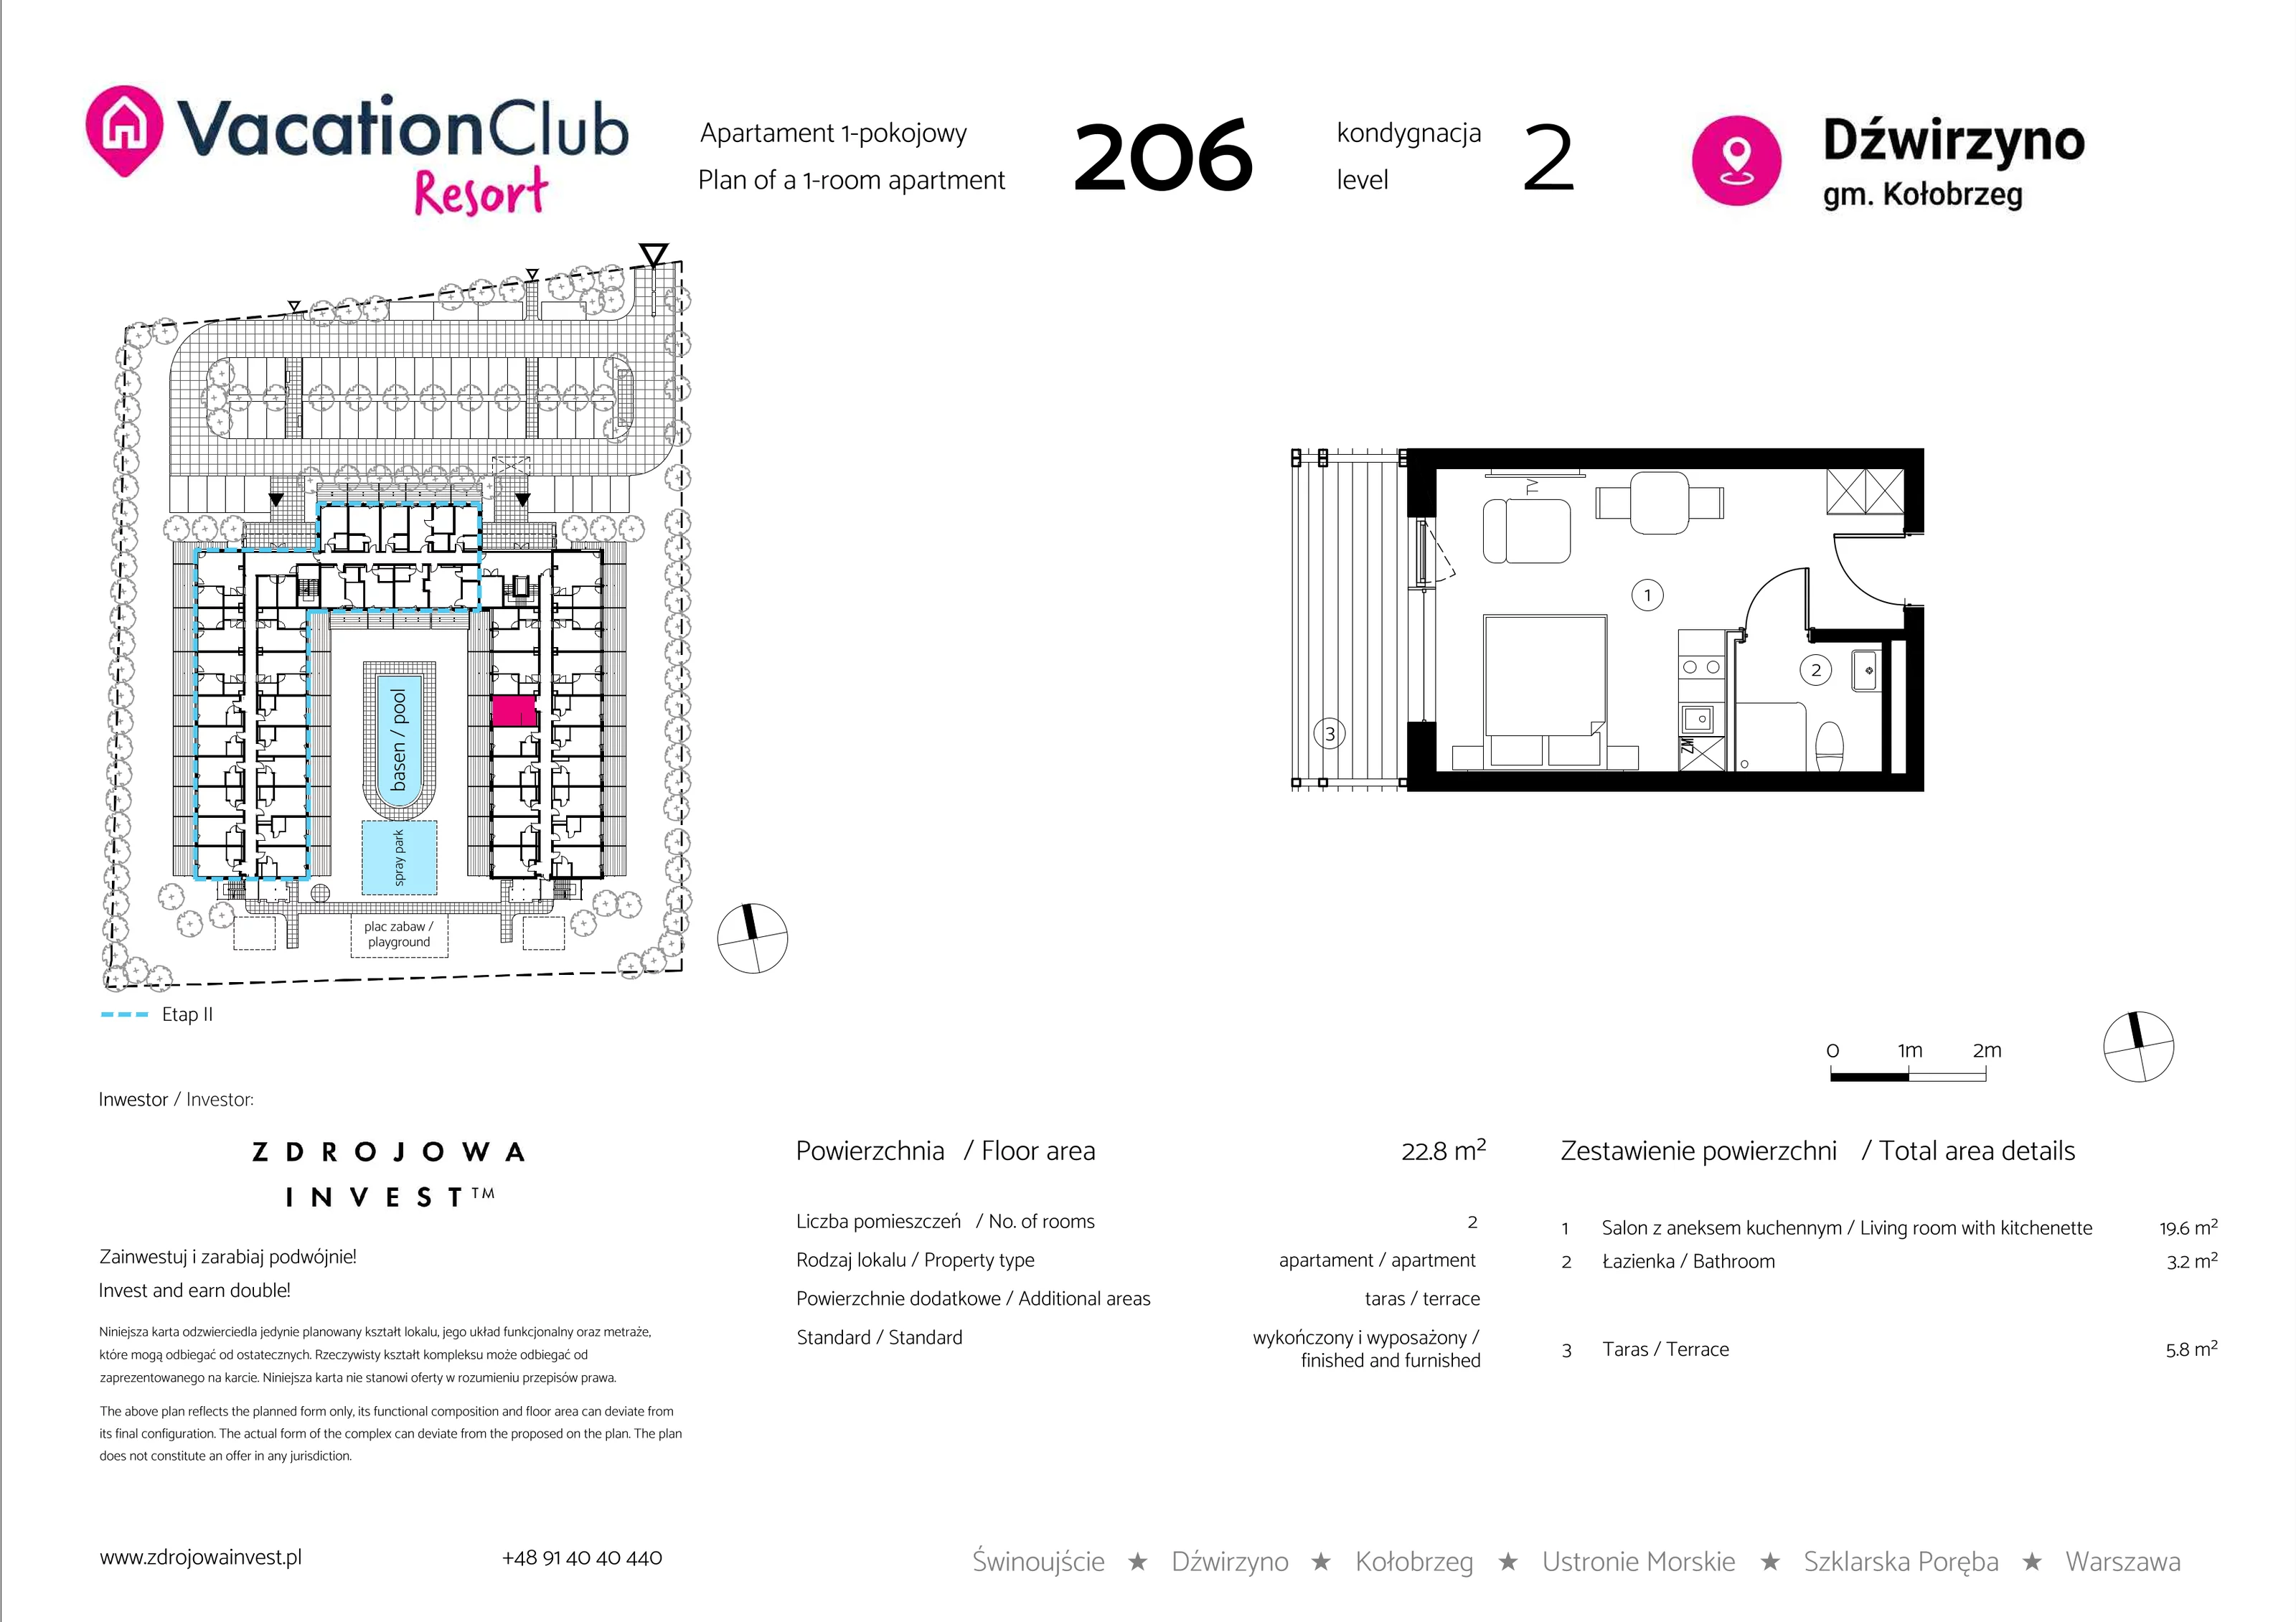 Apartament 22,80 m², piętro 1, oferta nr 206, Vacation Club Resort - apartamenty wakacyjne, Dźwirzyno, ul. Wczasowa 8